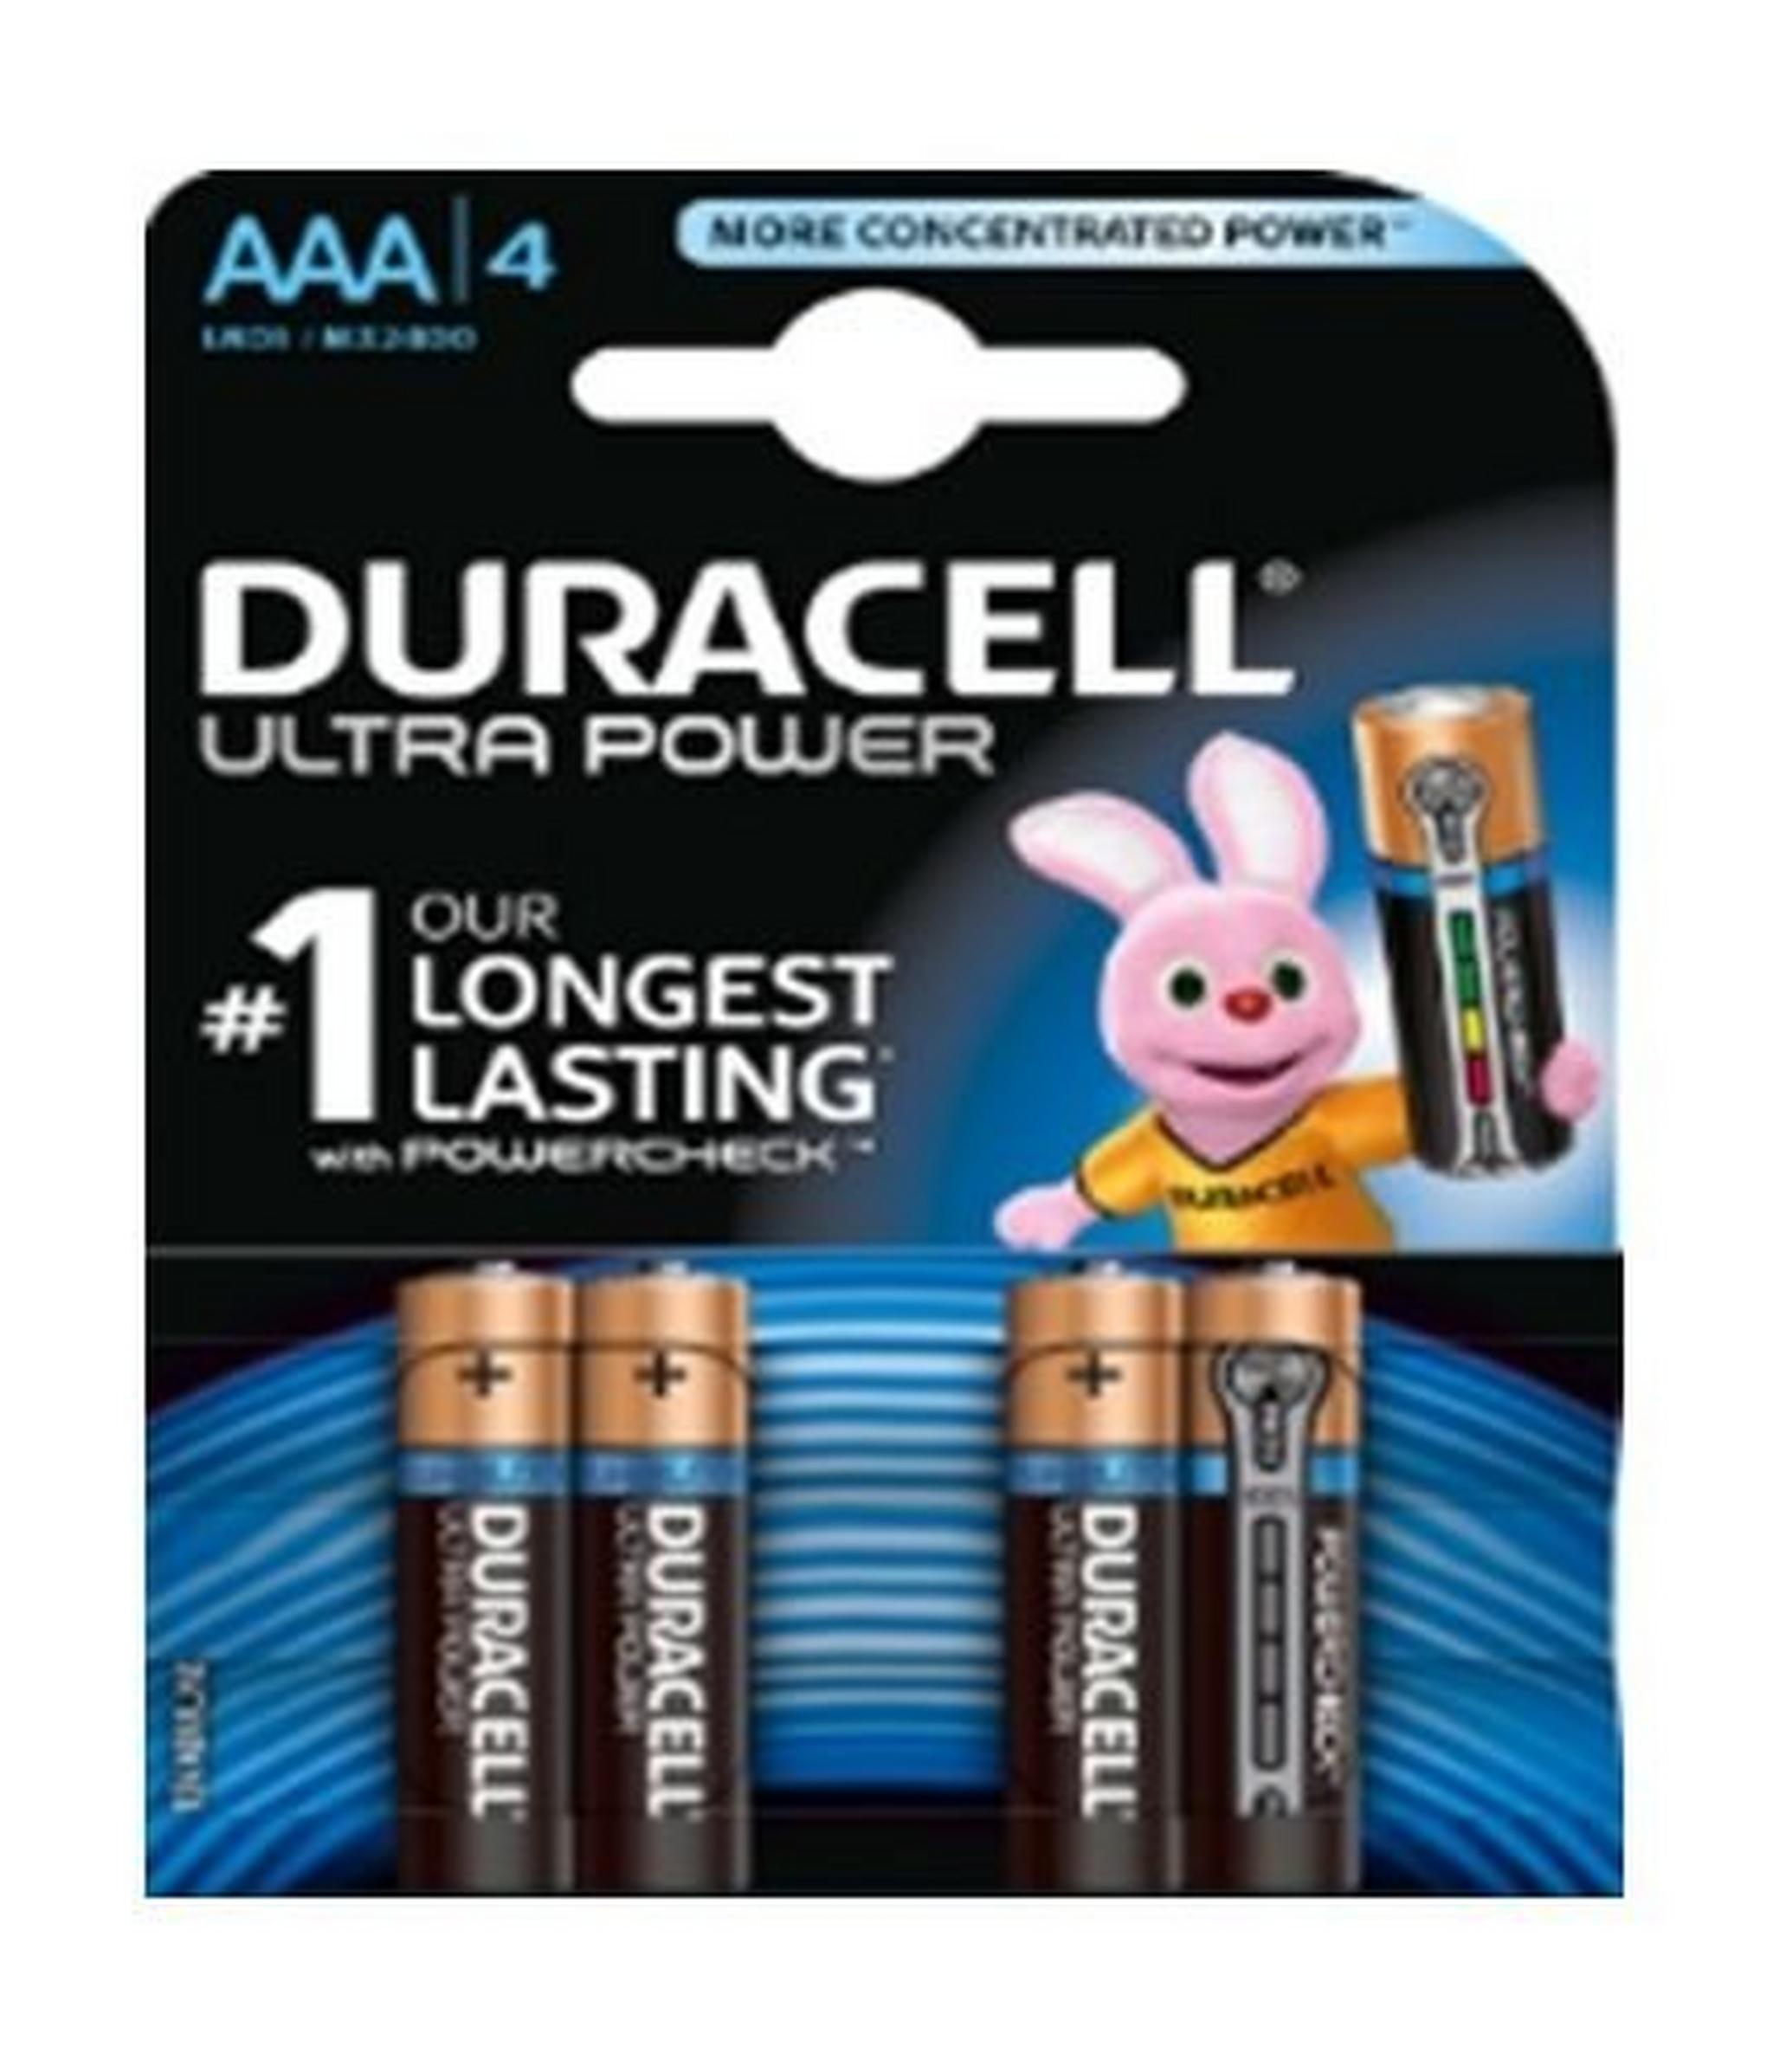 Duracell Ultra Power AAA Battery - 4 Batteries